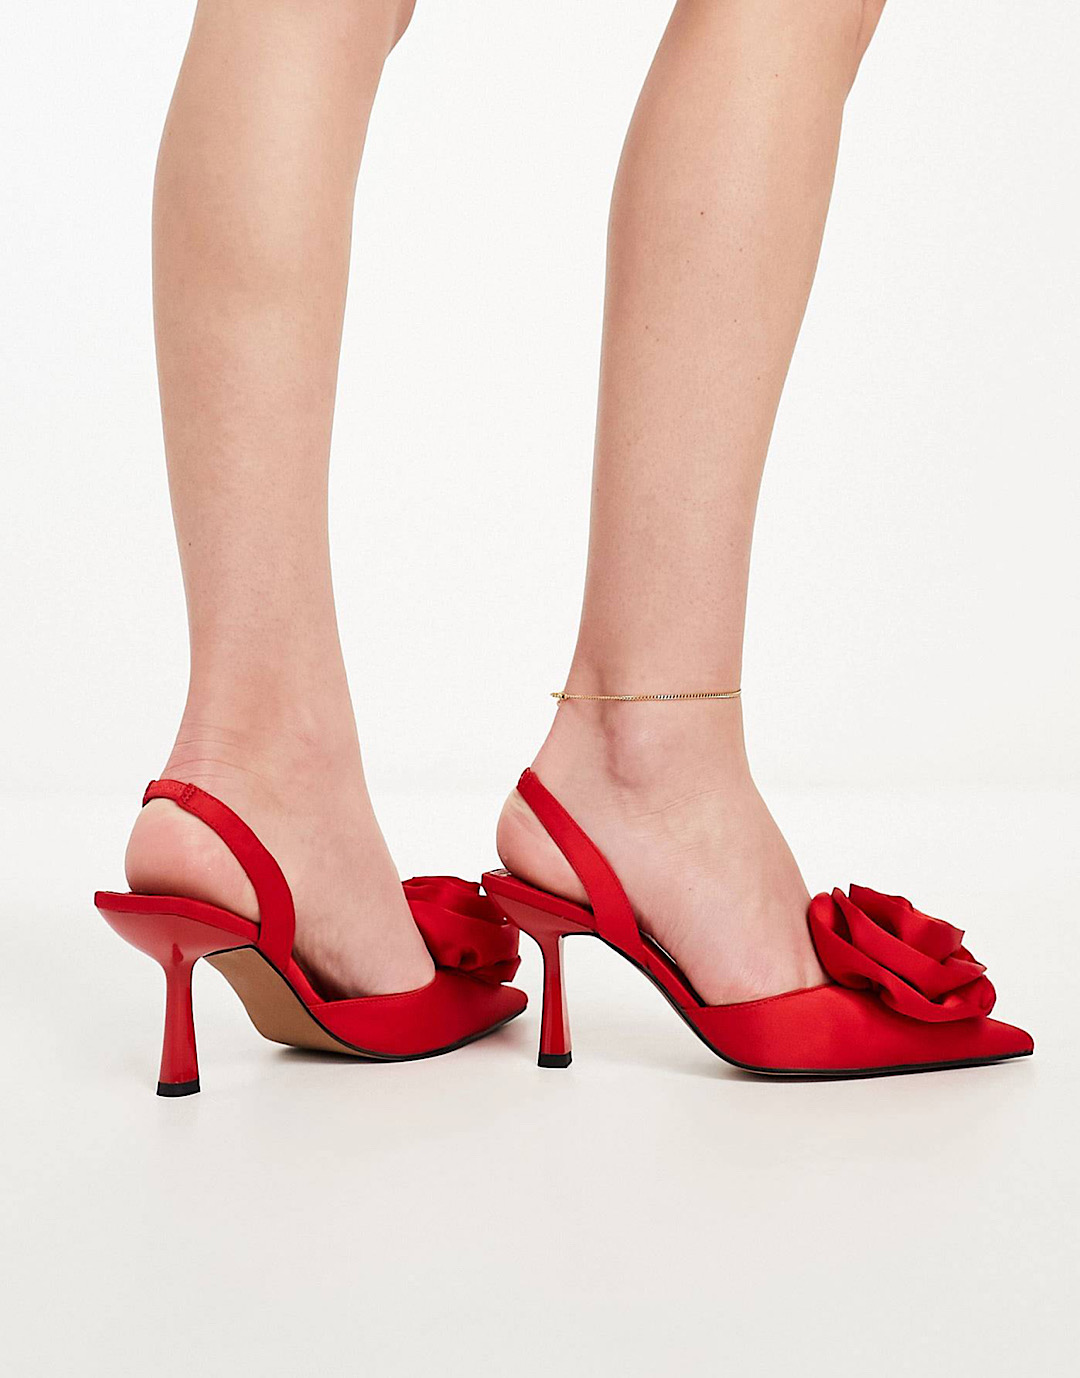 Zapatos rojos asos destalonados con detalle ramillete de Sia, zapatos rojos asos, zapatos con rosa, dónde comprar zapatos rojos, shopping zapatos rojos, tendencias zapatos rojos, mav magazine, aurora vega personal shopper, personal shopper mallorca